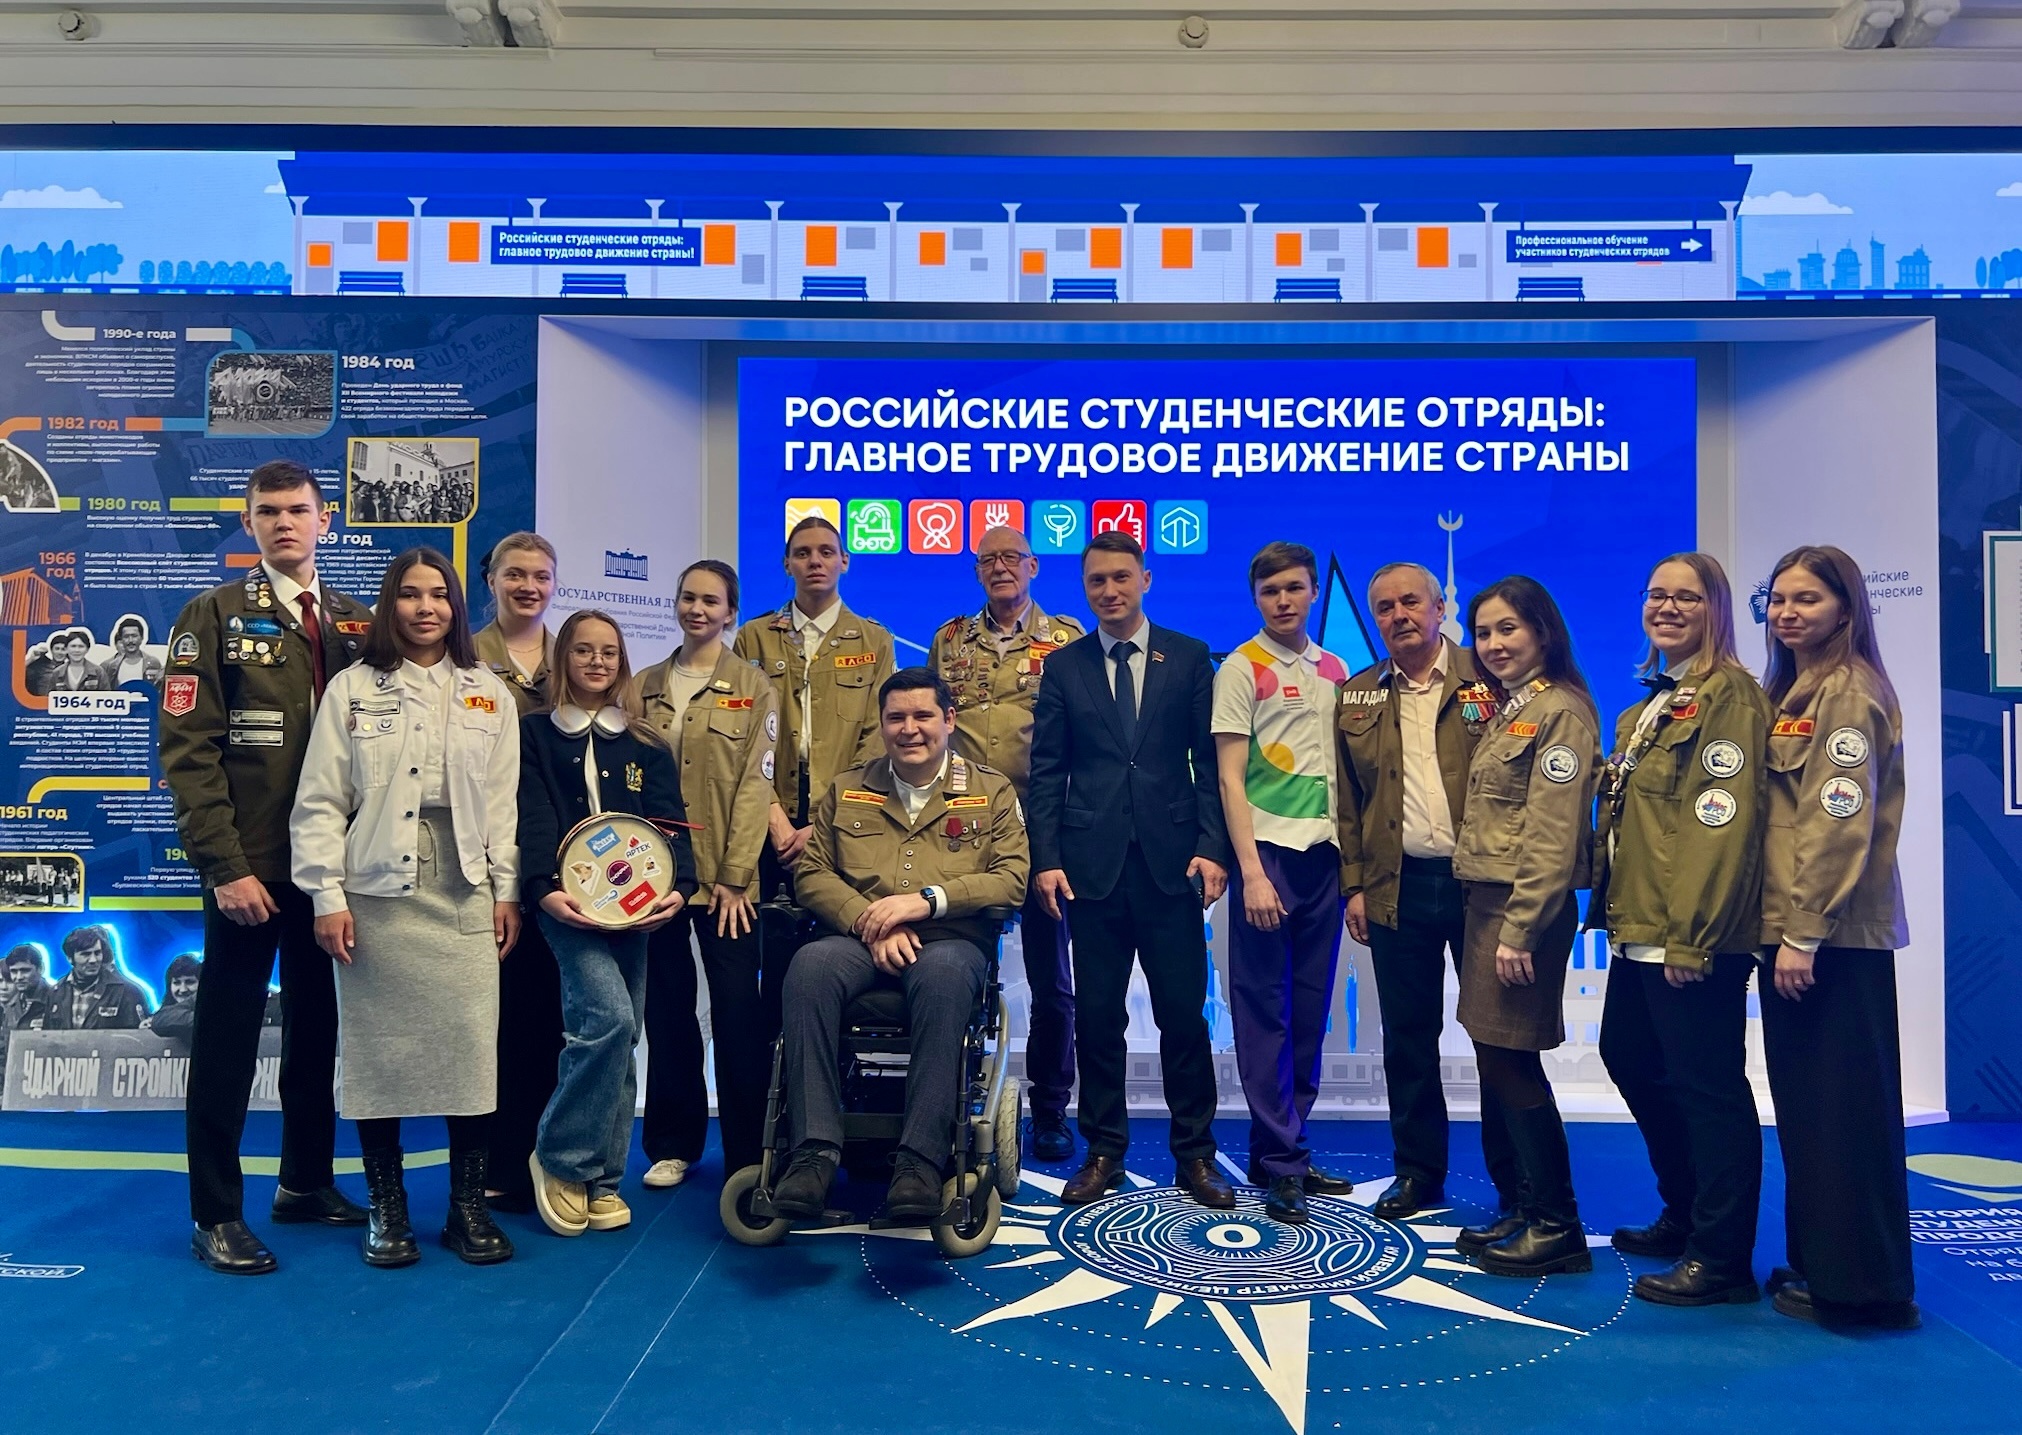 Сегодня в Государственной Думе открылась выставка «Российские студенческие отряды — главное трудовое движение страны». 